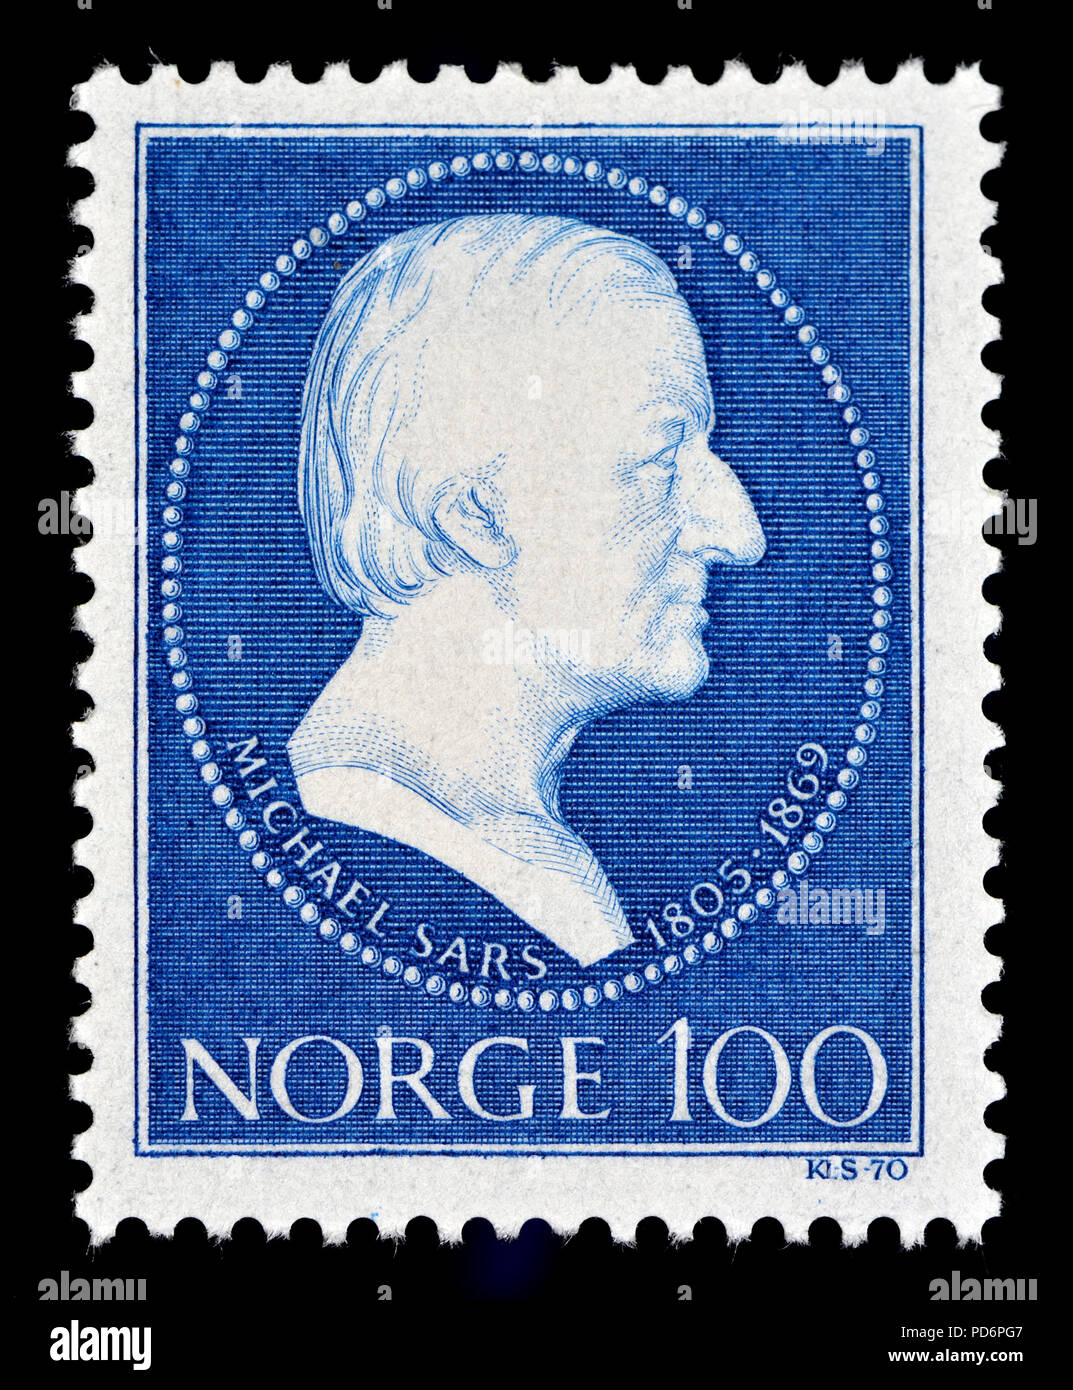 Sellos de Noruega (1970) : Michael Sars (1805 - 1869), teólogo y biólogo noruego. El Registro mundial de especies marinas (gusanos) enumera 260 Foto de stock